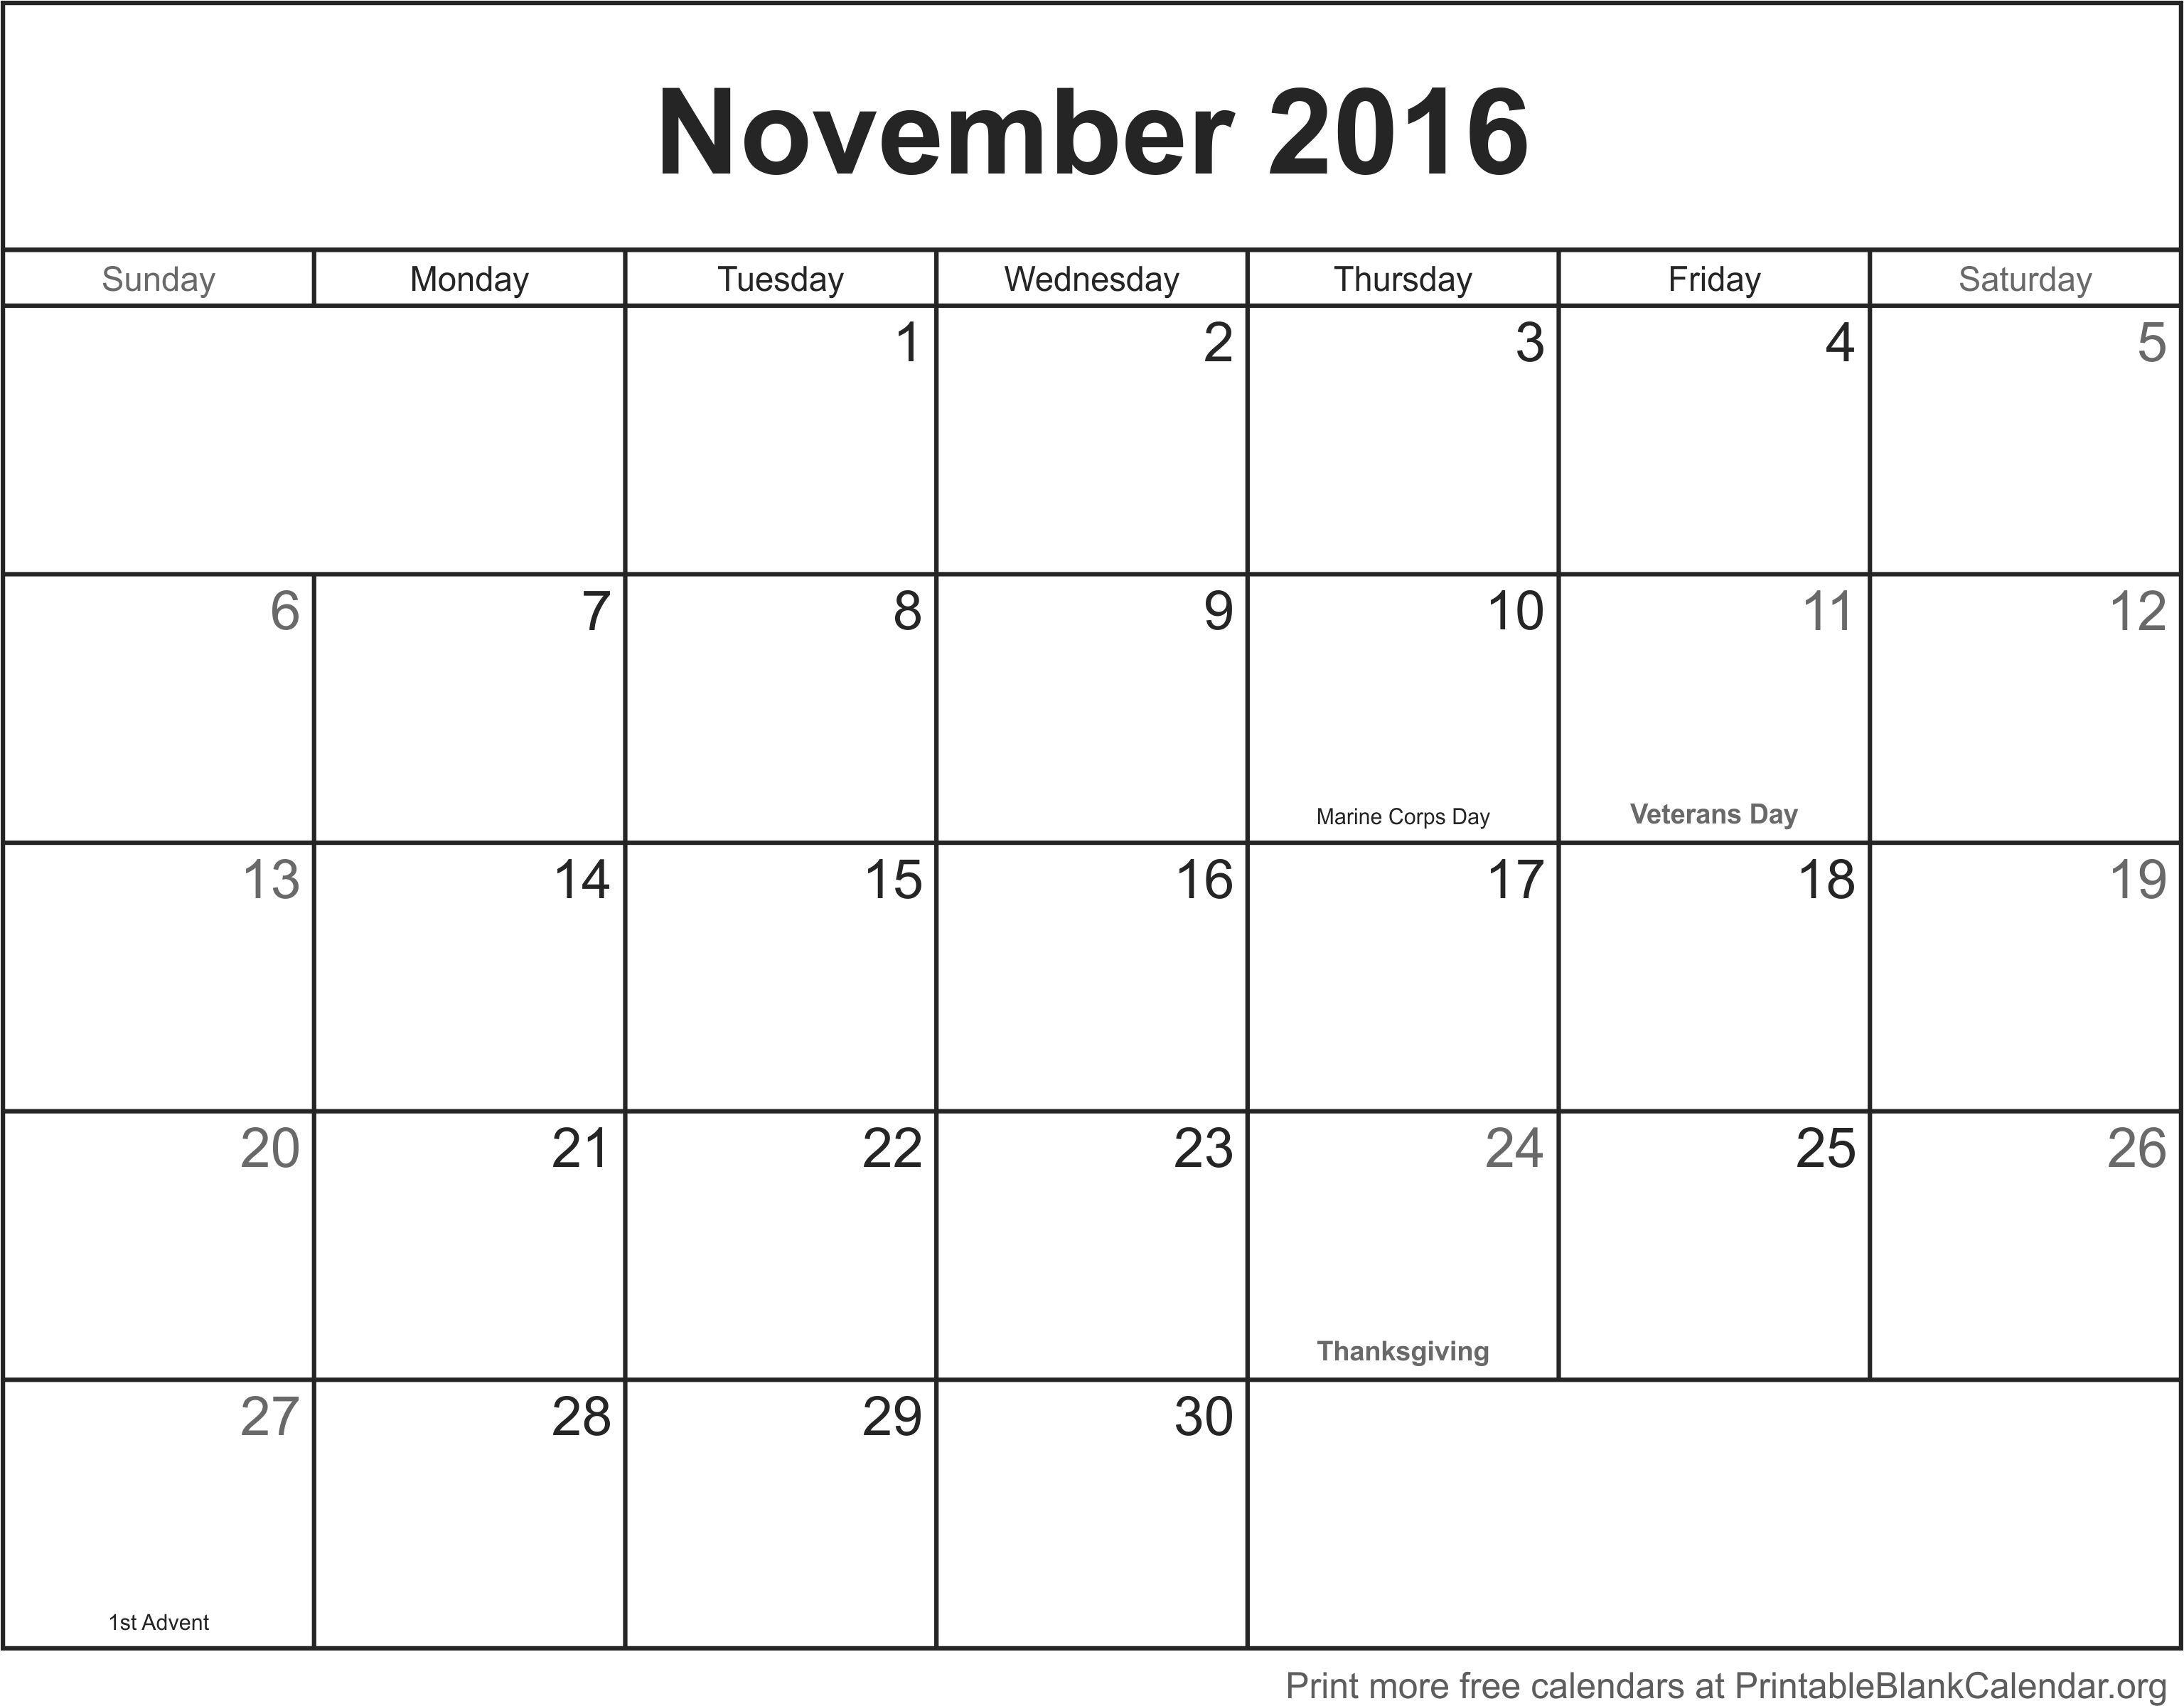 November, 2016